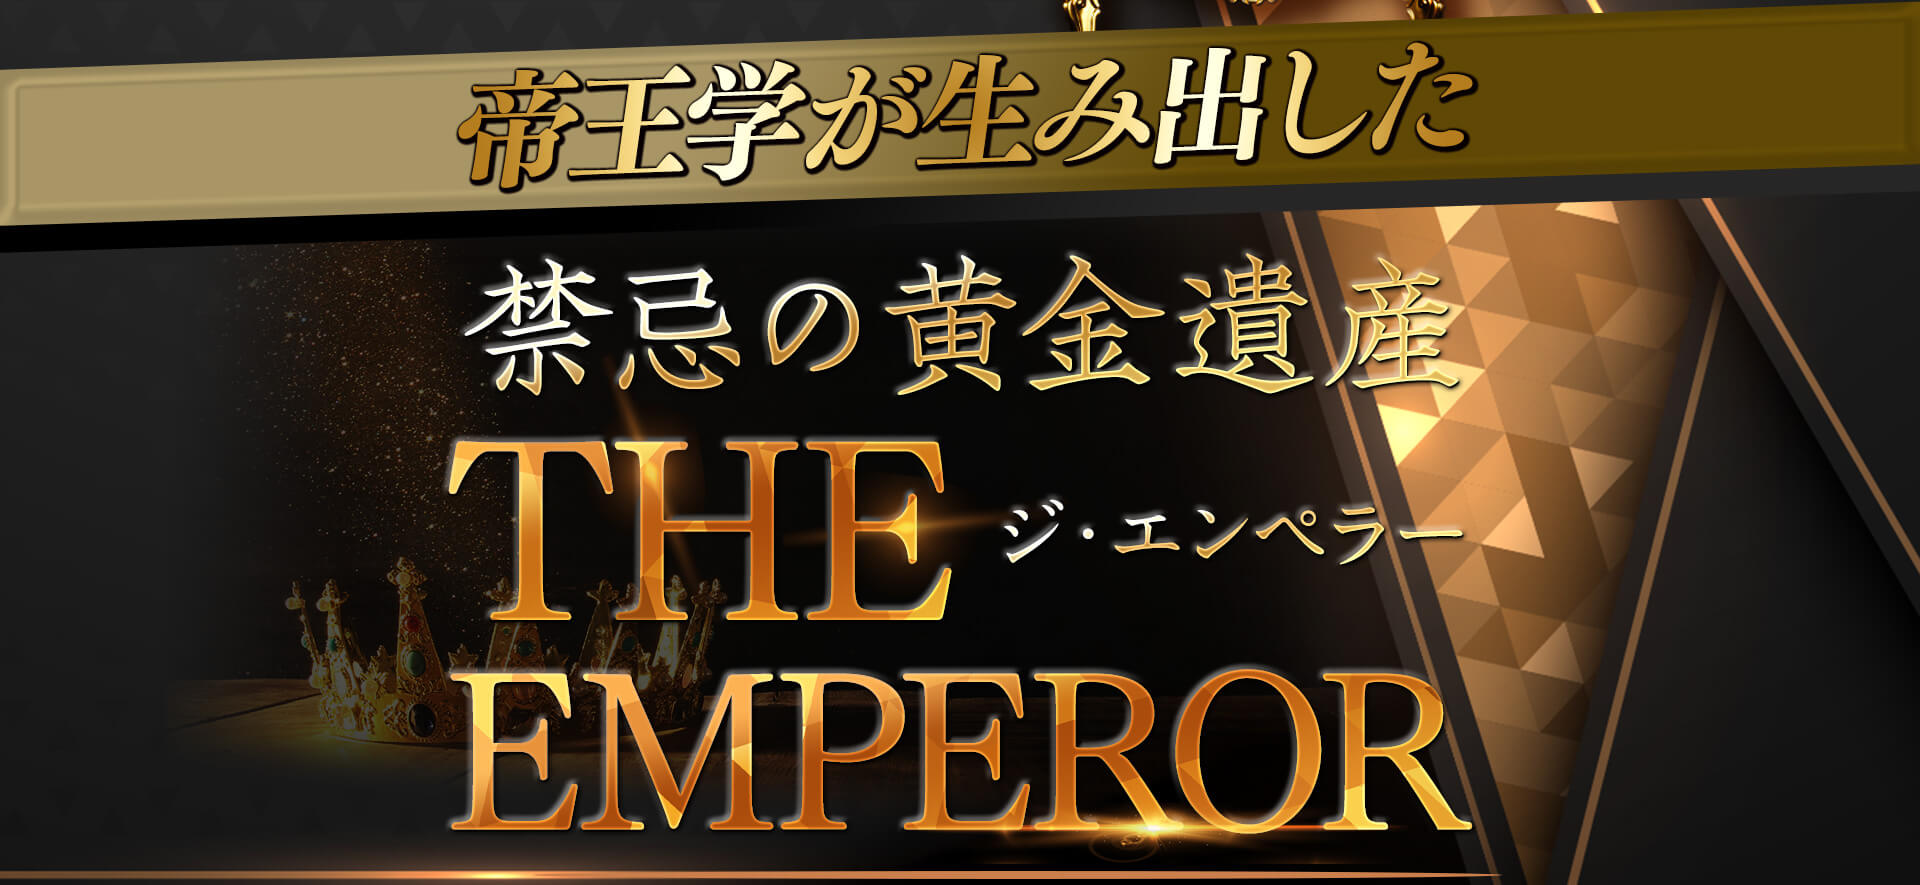 帝王学が生み出した禁忌の黄金遺産 The Emperor- ジ・エンペラー -